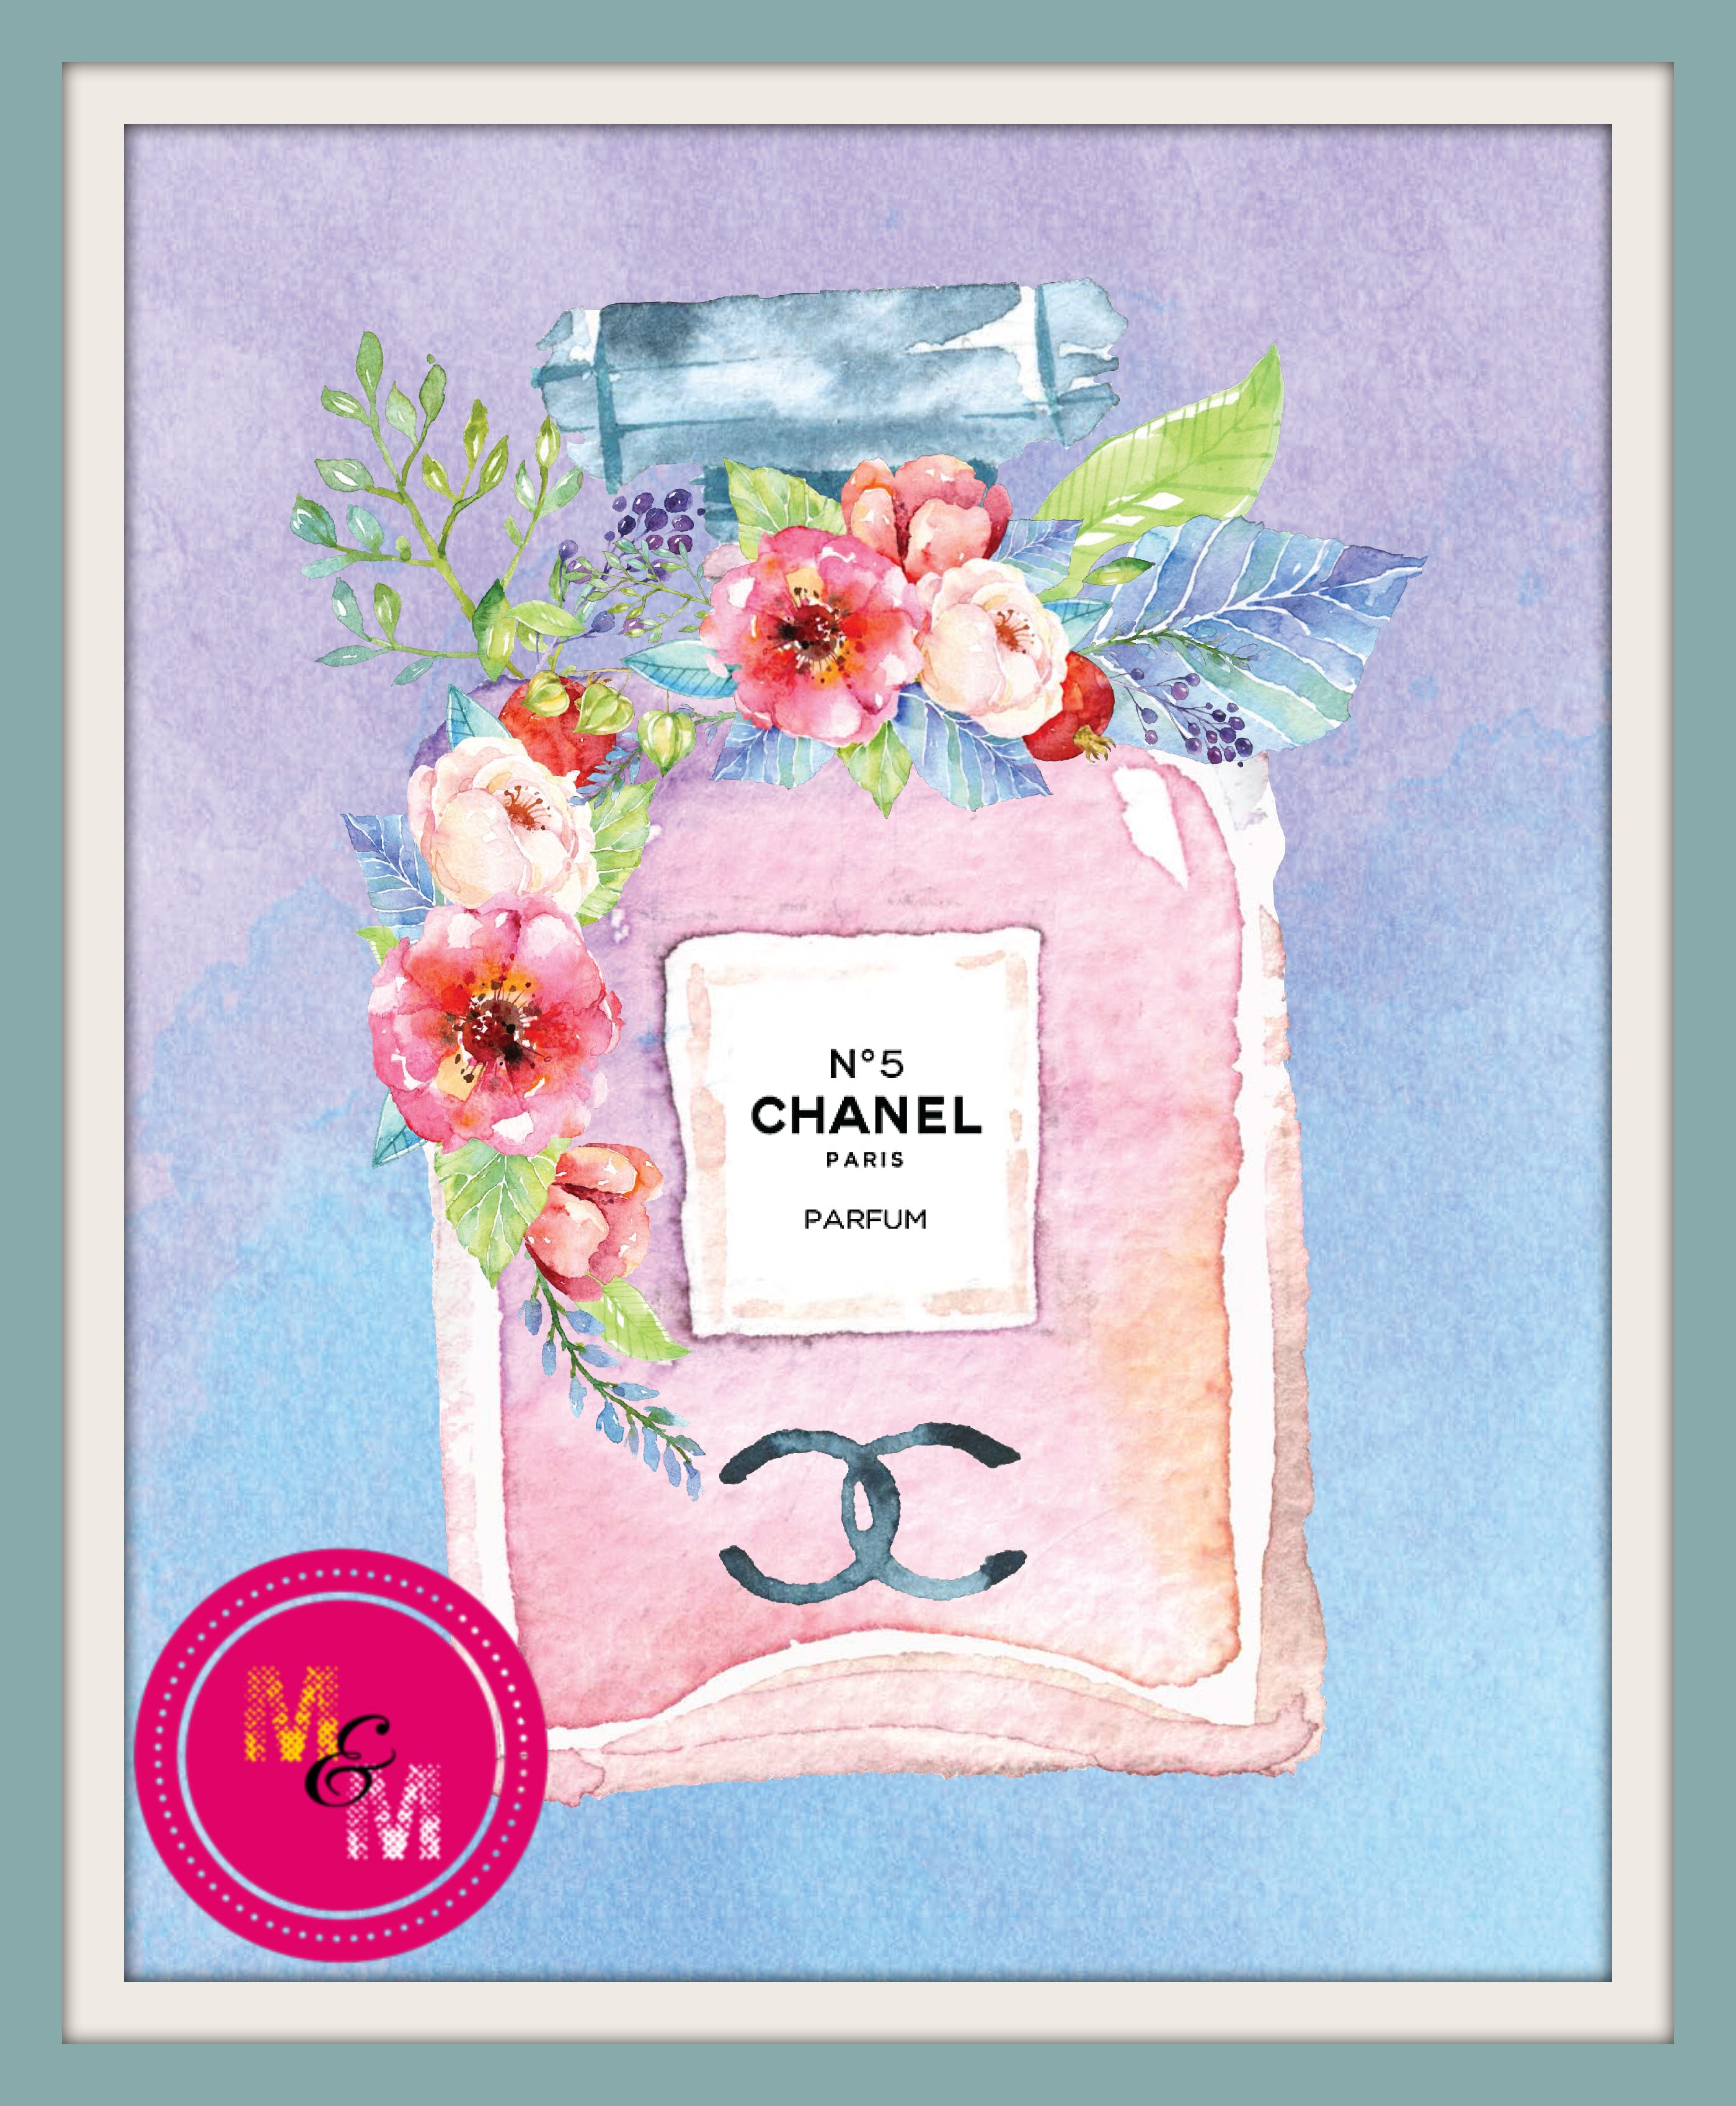 CHANEL NO. 5 L'eau by Chanel Eau De Toilette Spray 3.4 oz for